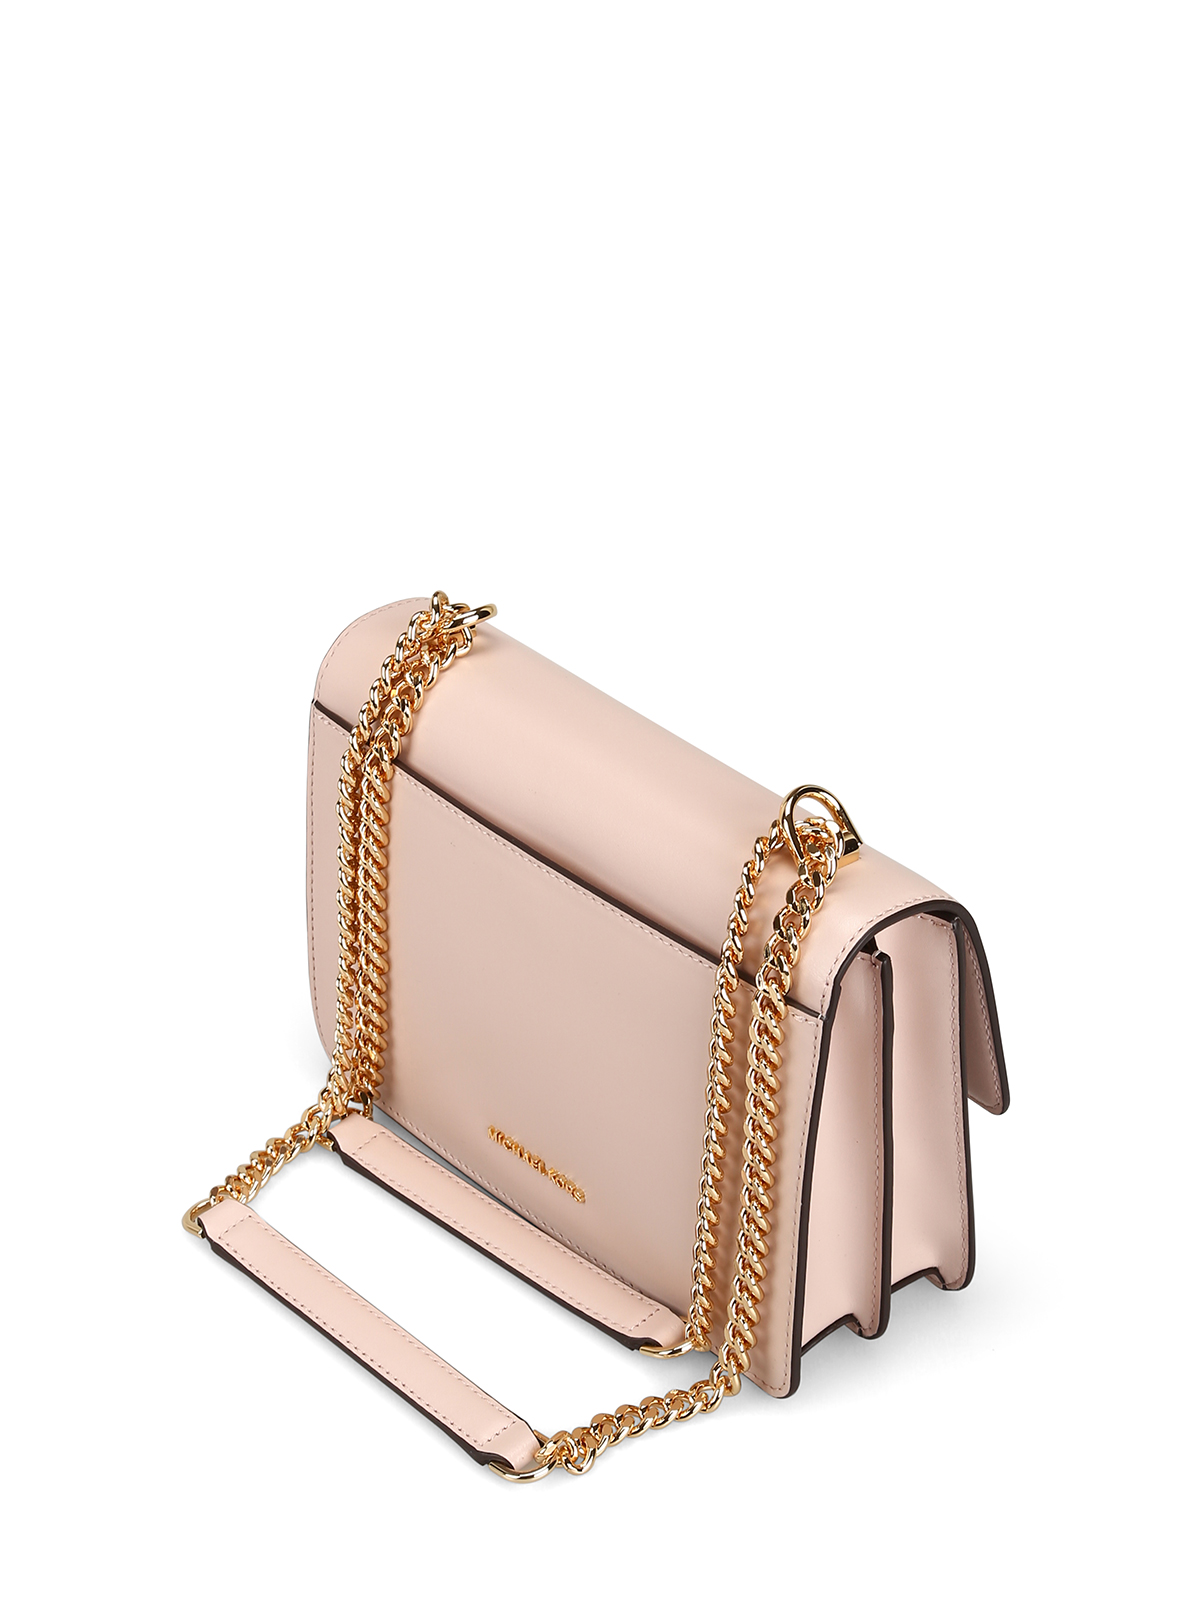 Michael Kors - Jade L light pink smooth leather bag - shoulder bags - 30S9GJ4L9L187